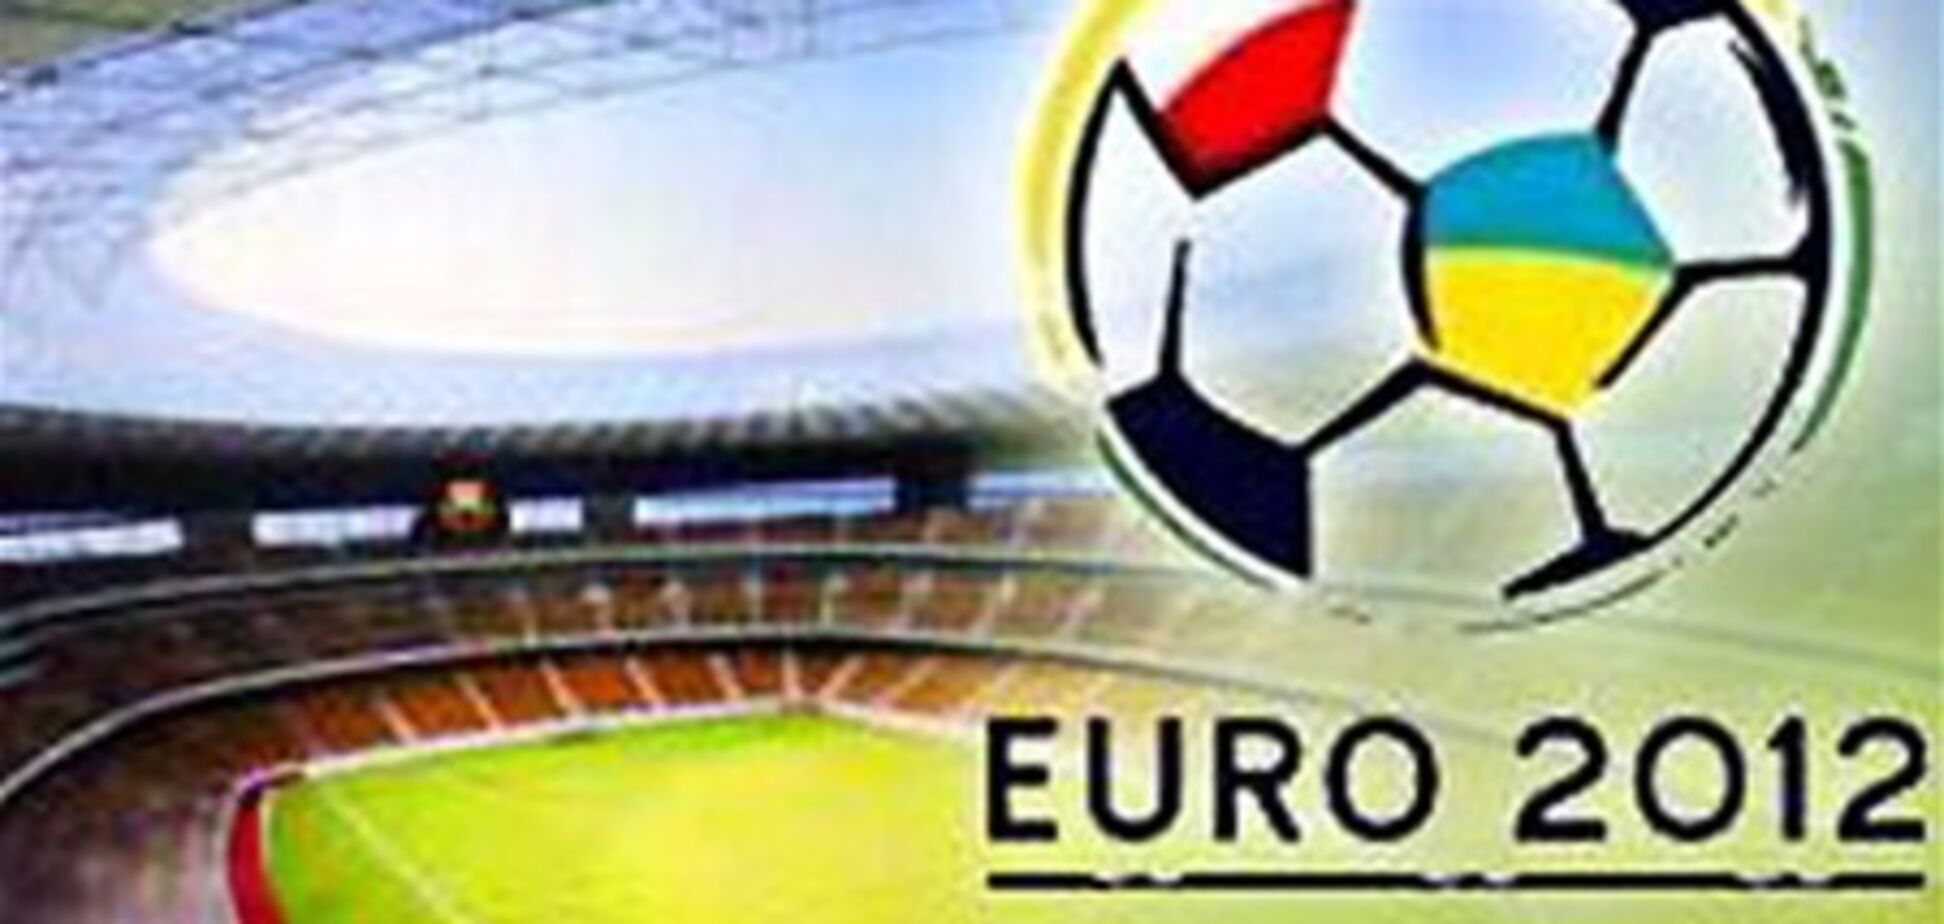 УЕФА собирается выручить 100 млн евро от продажи билетов Евро-2012 